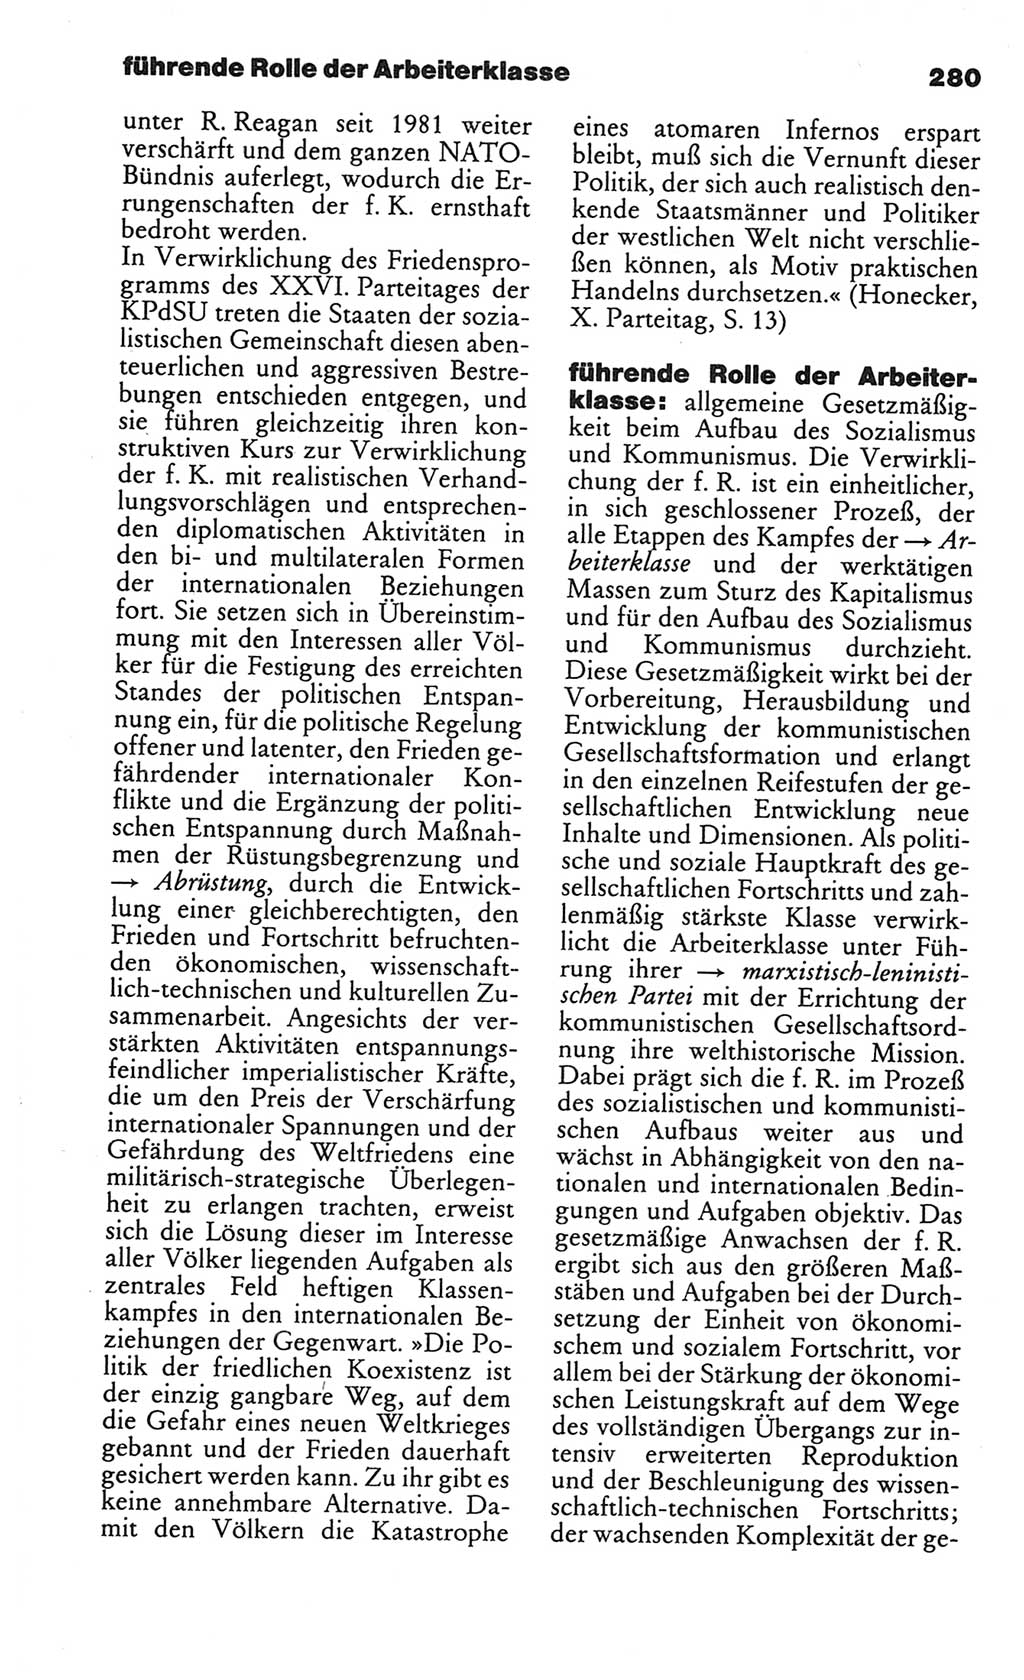 Kleines politisches Wörterbuch [Deutsche Demokratische Republik (DDR)] 1986, Seite 280 (Kl. pol. Wb. DDR 1986, S. 280)